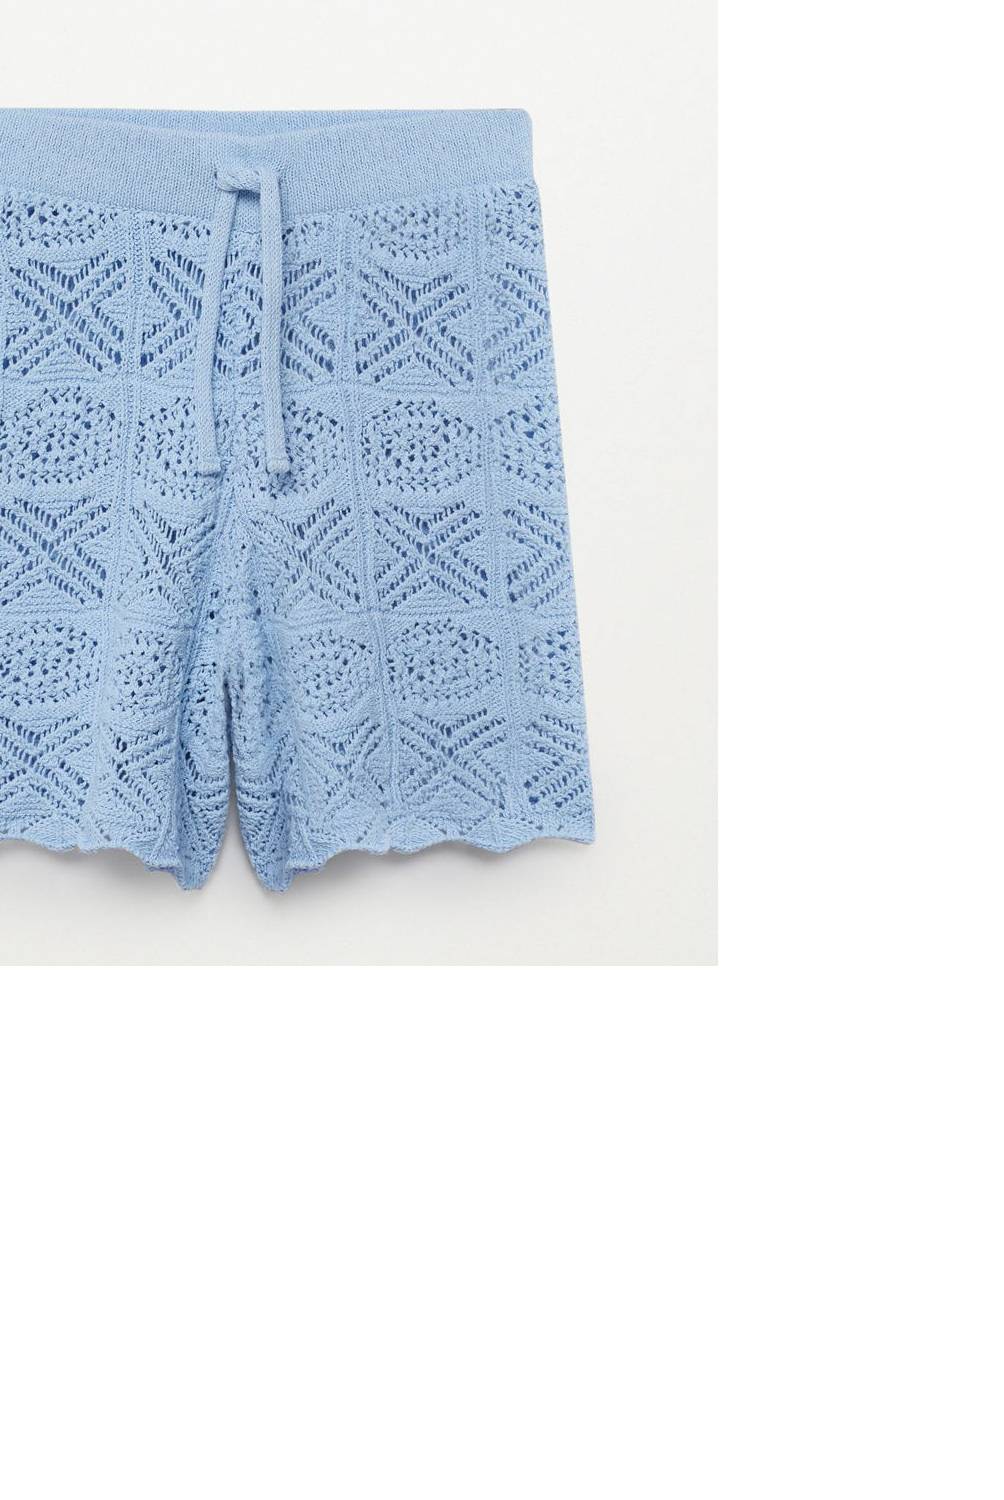 MANGO - Short 100% Algodón Crochet Cova Mujer